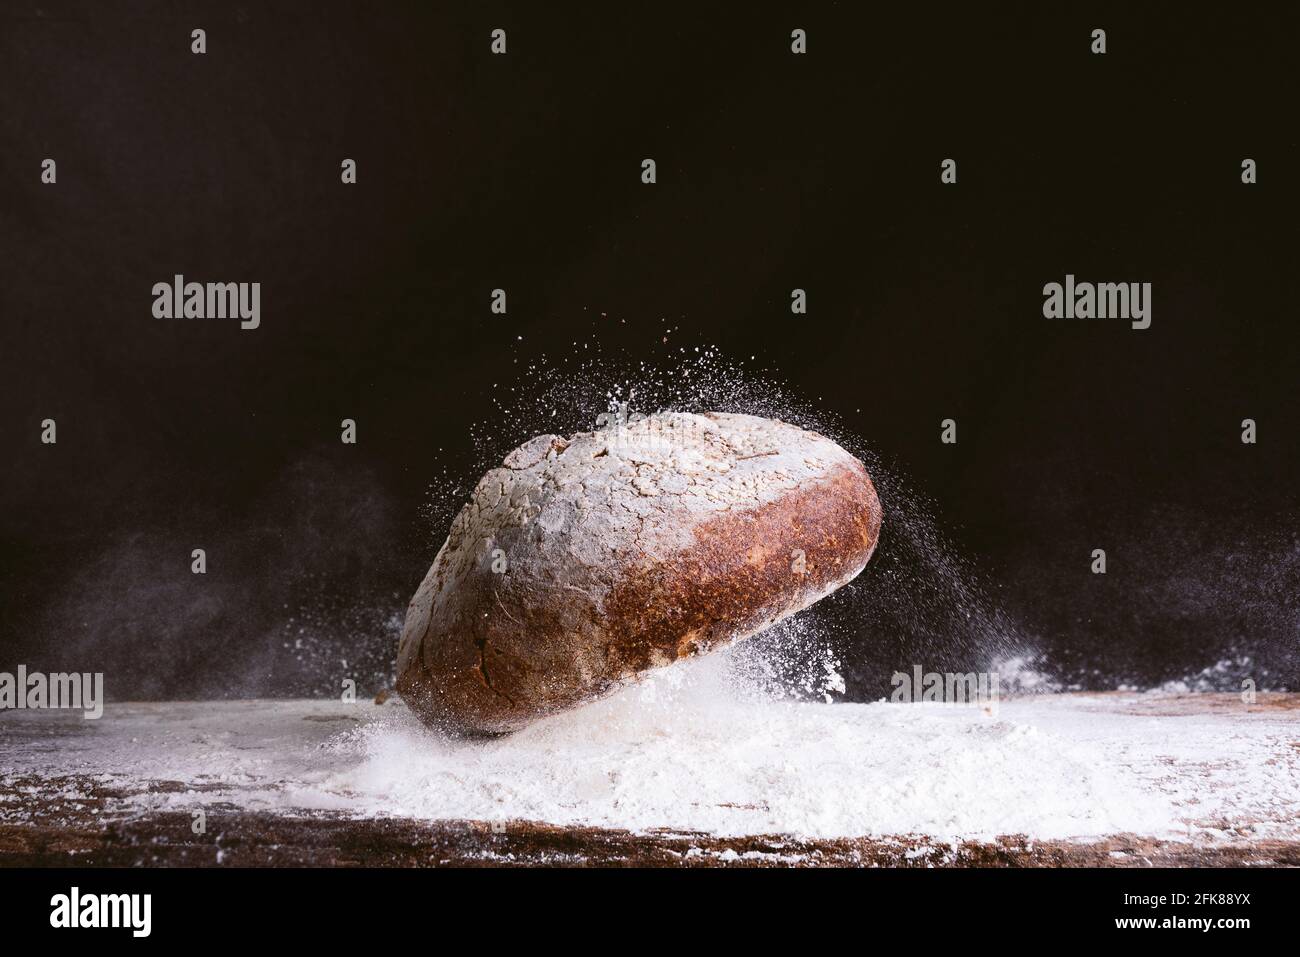 espectacular imagen de pan dorado fresco y rústico cayendo sobre mesa de cocina de madera con explosión de harina sobre fondo negro. concepto de panadería y. Foto de stock